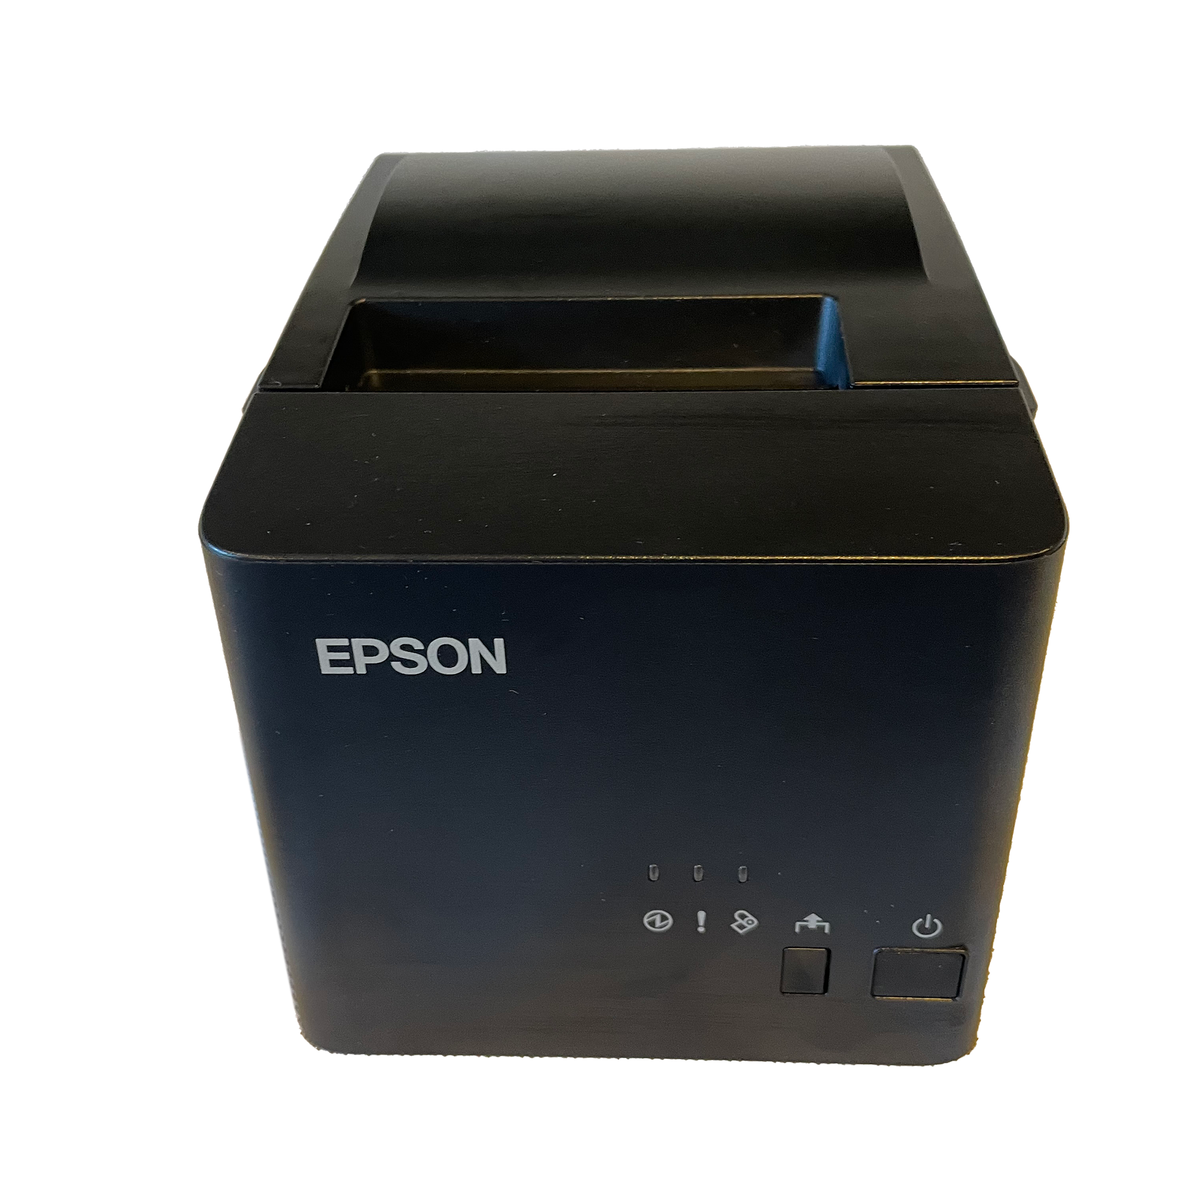 Epson Tm T82iii Usb Receipt Printer For Windows Lightspeed X Series Till Man Nz 5642